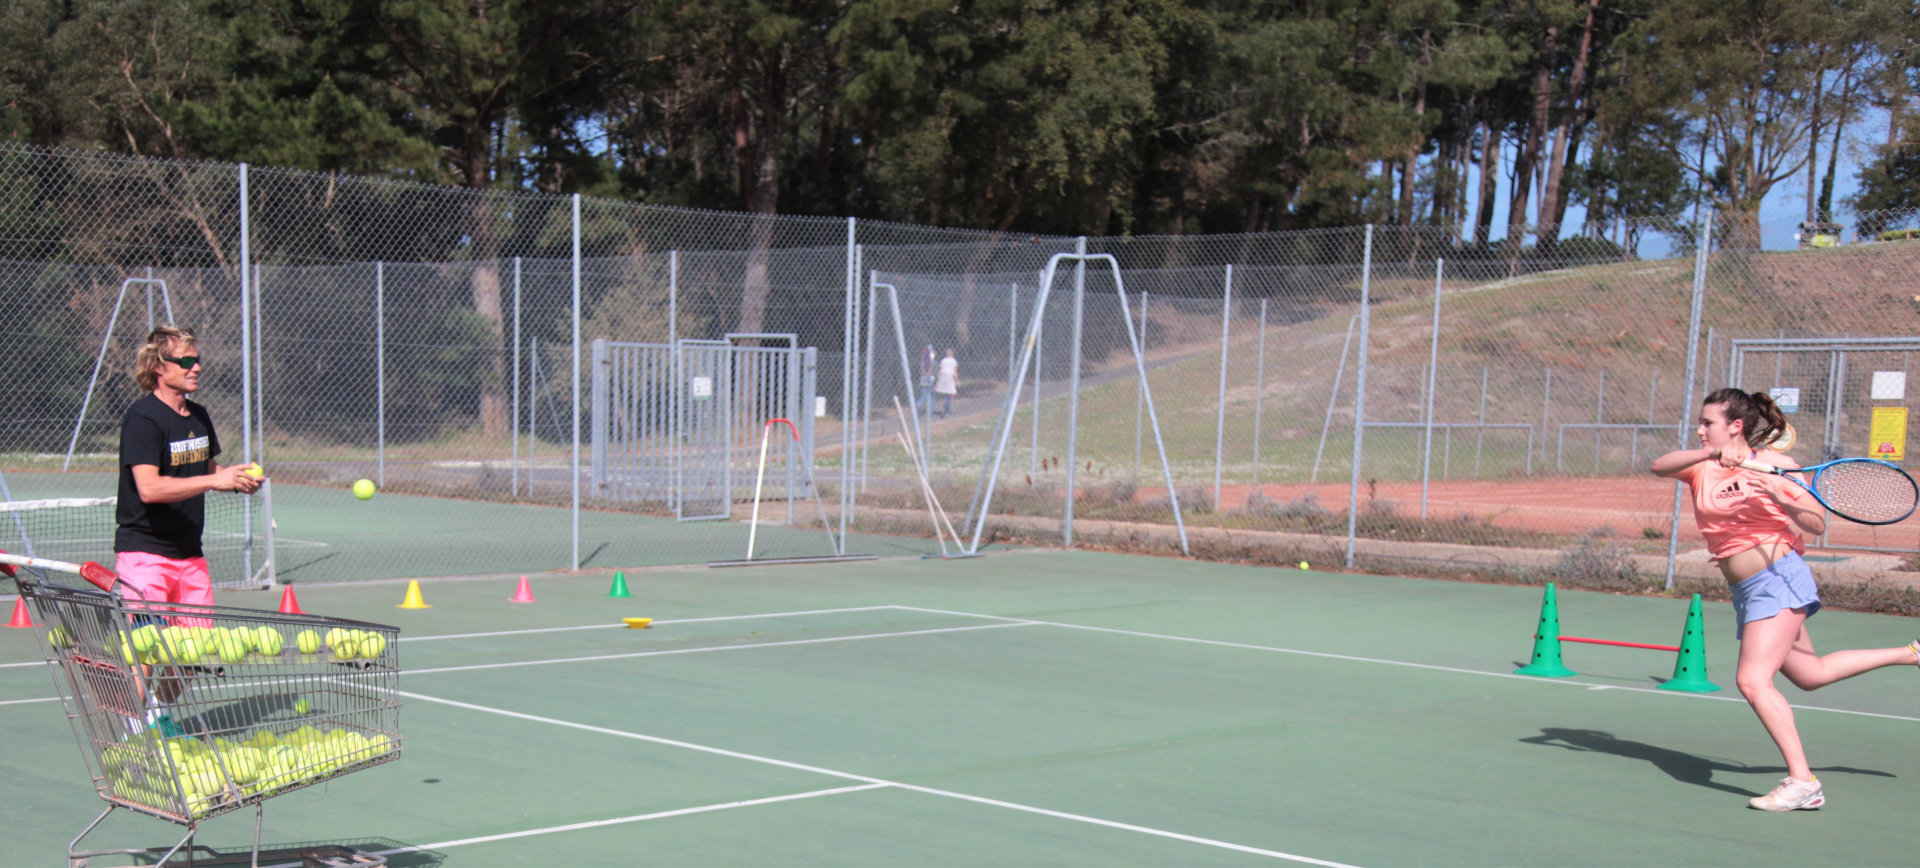 Inscrivez-vous à l'académie et prenez des leçons avec nos professeurs de tennis Du tennis de Moliets qui propose la location de courts à l'heure en dur, green-set, terre-battue, gazon couverts ou extérieurs. Des stages tennis pour tout public de Acad